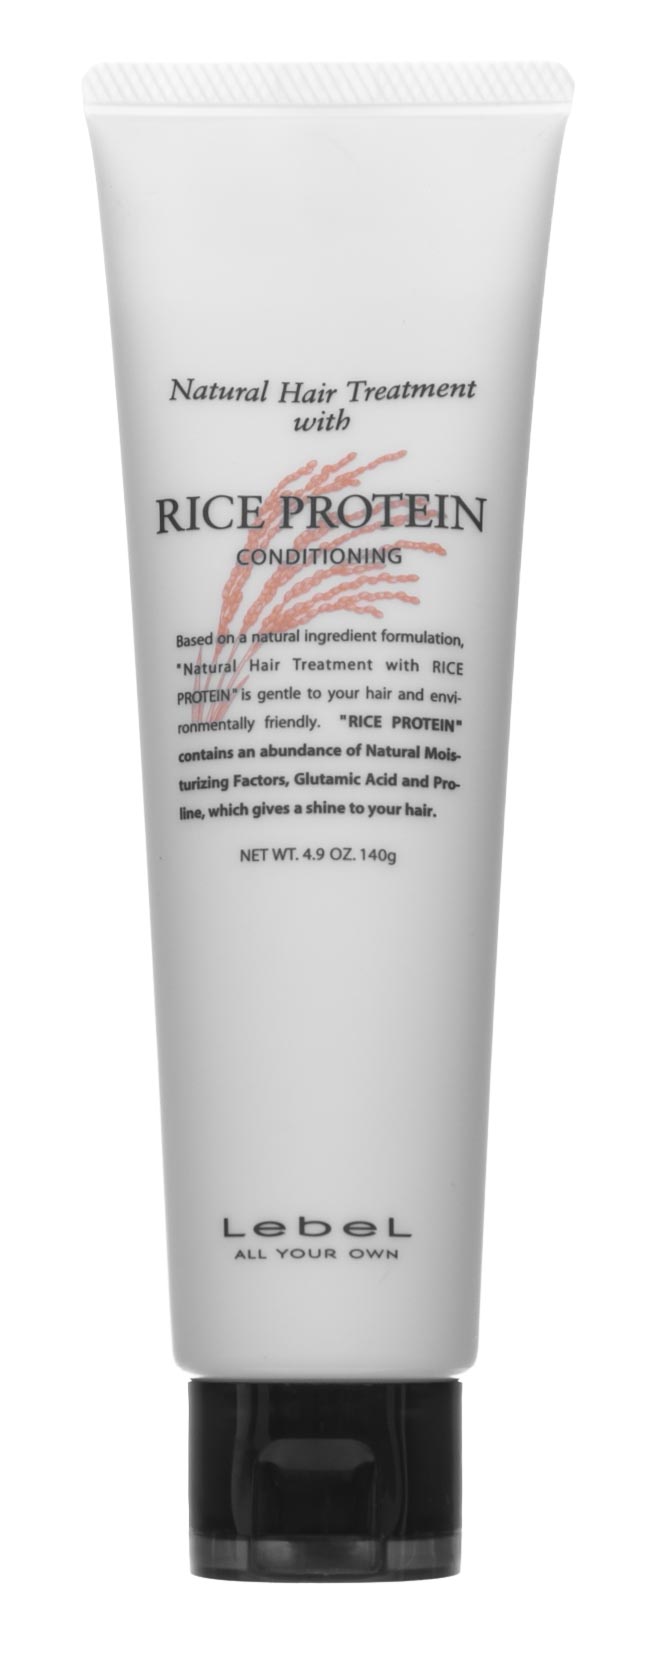 цена Lebel Восстанавливающая маска для волос Rice Protein, 140 г (Lebel, Натуральная серия)